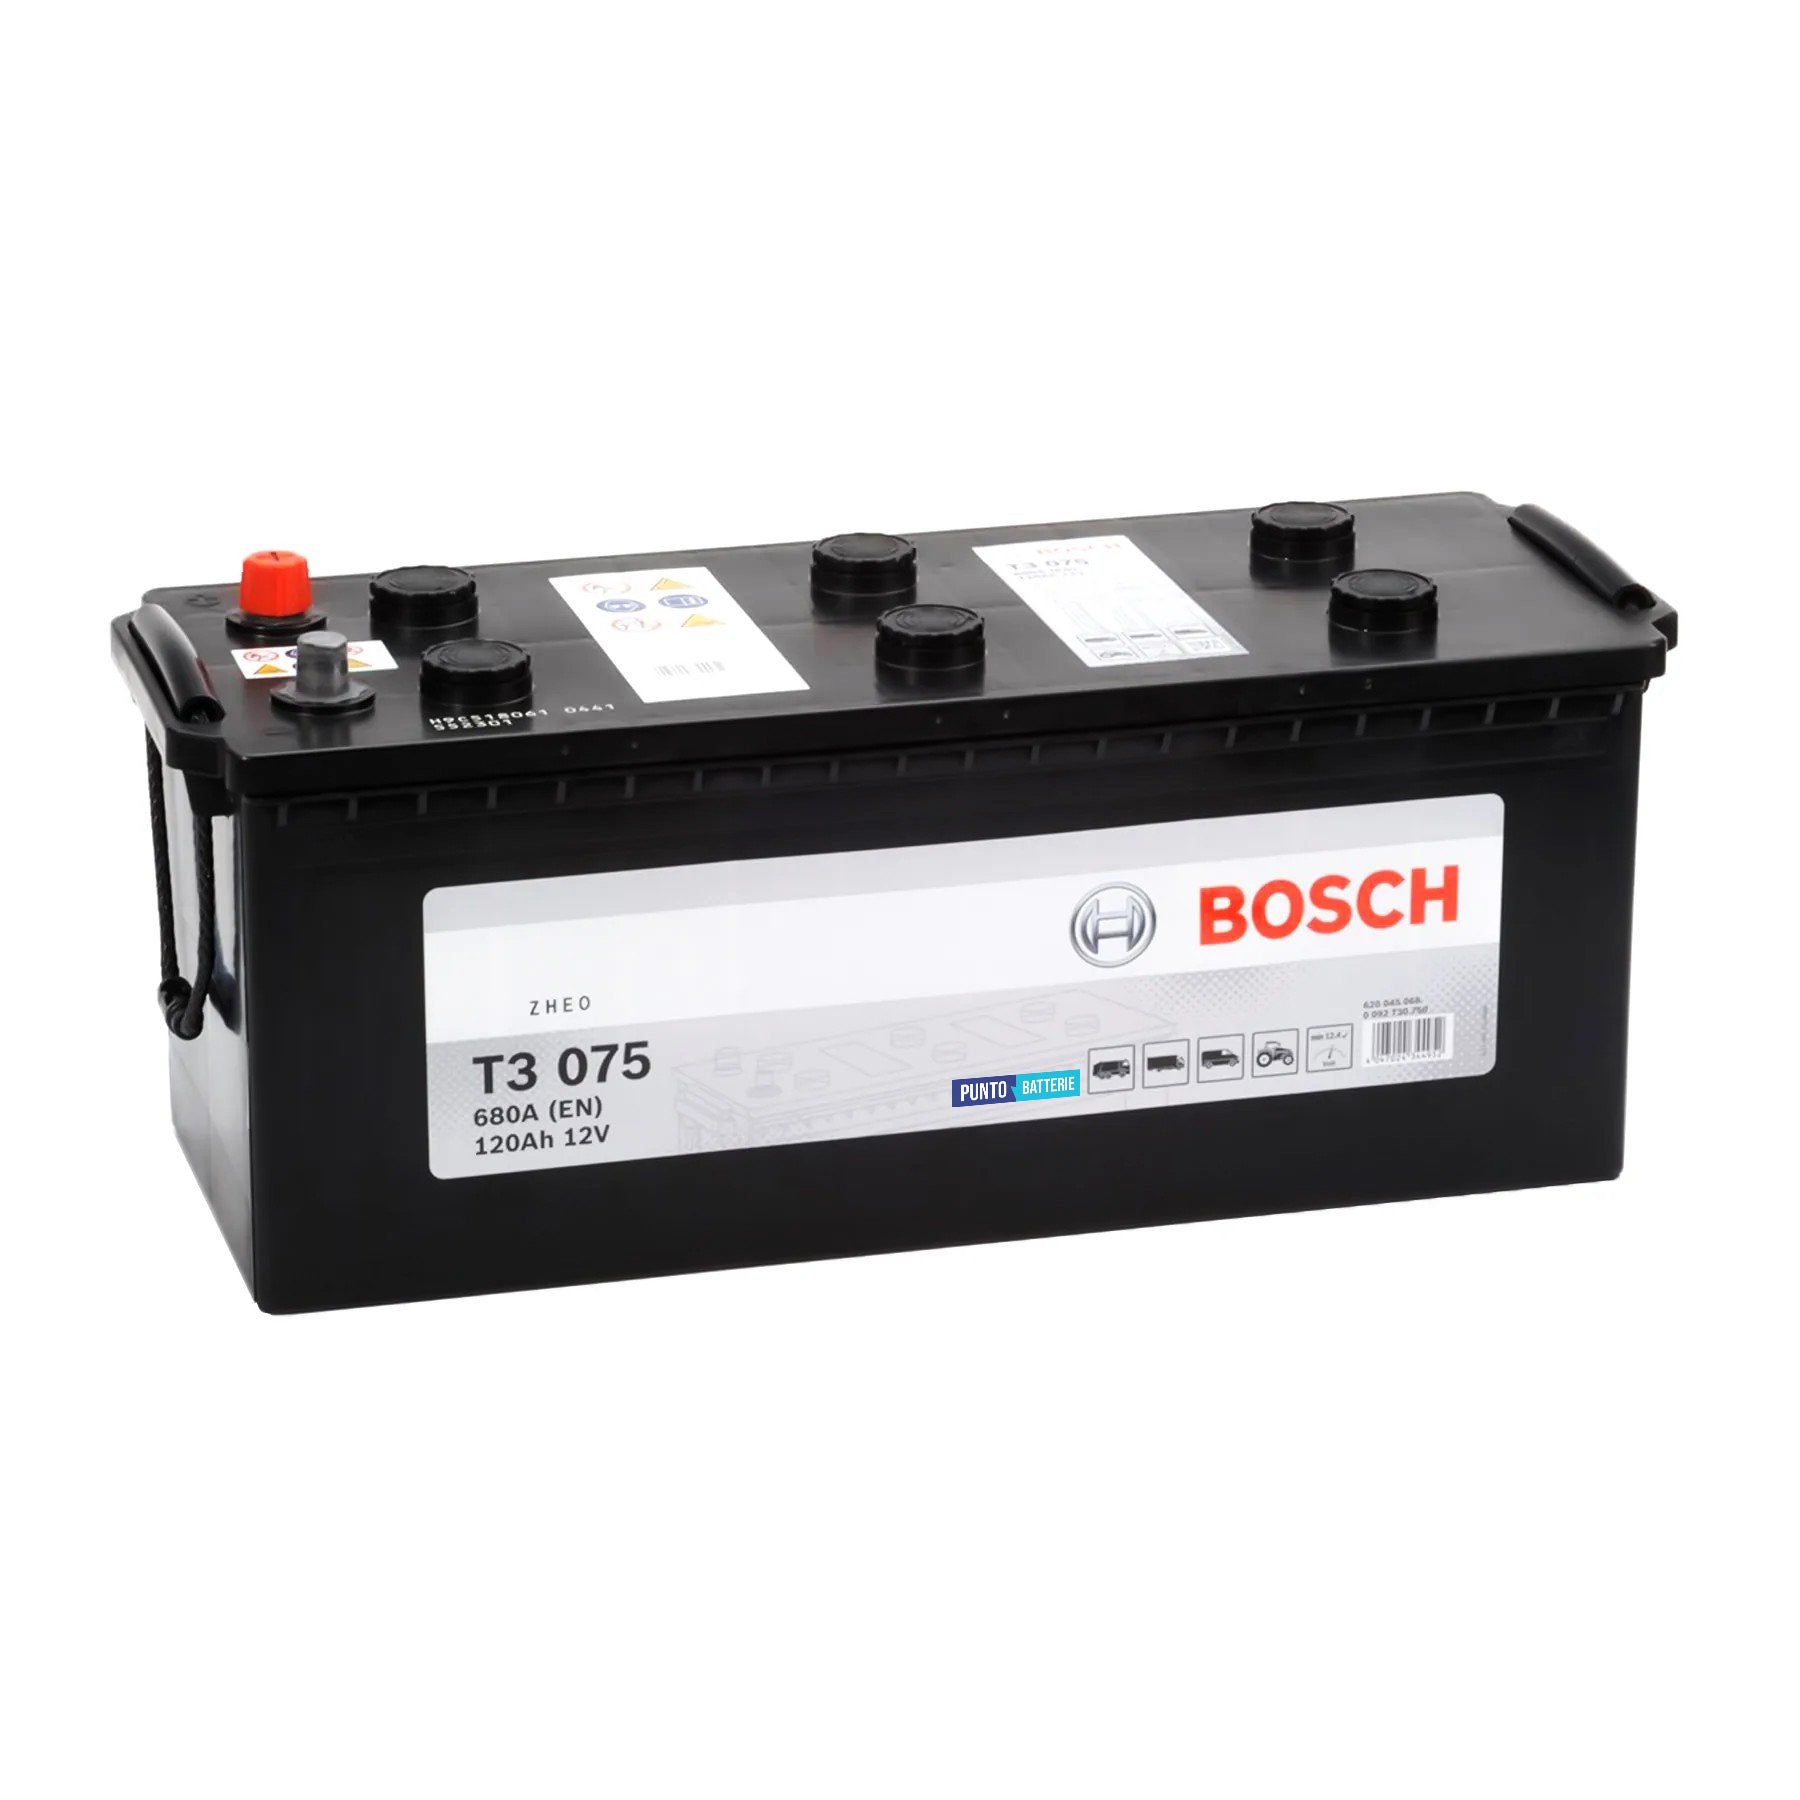 Batteria originale Bosch T3 T3075, dimensioni 513 x 189 x 223, polo positivo a sinistra, 12 volt, 120 amperora, 680 ampere. Batteria per camion e veicoli pesanti.